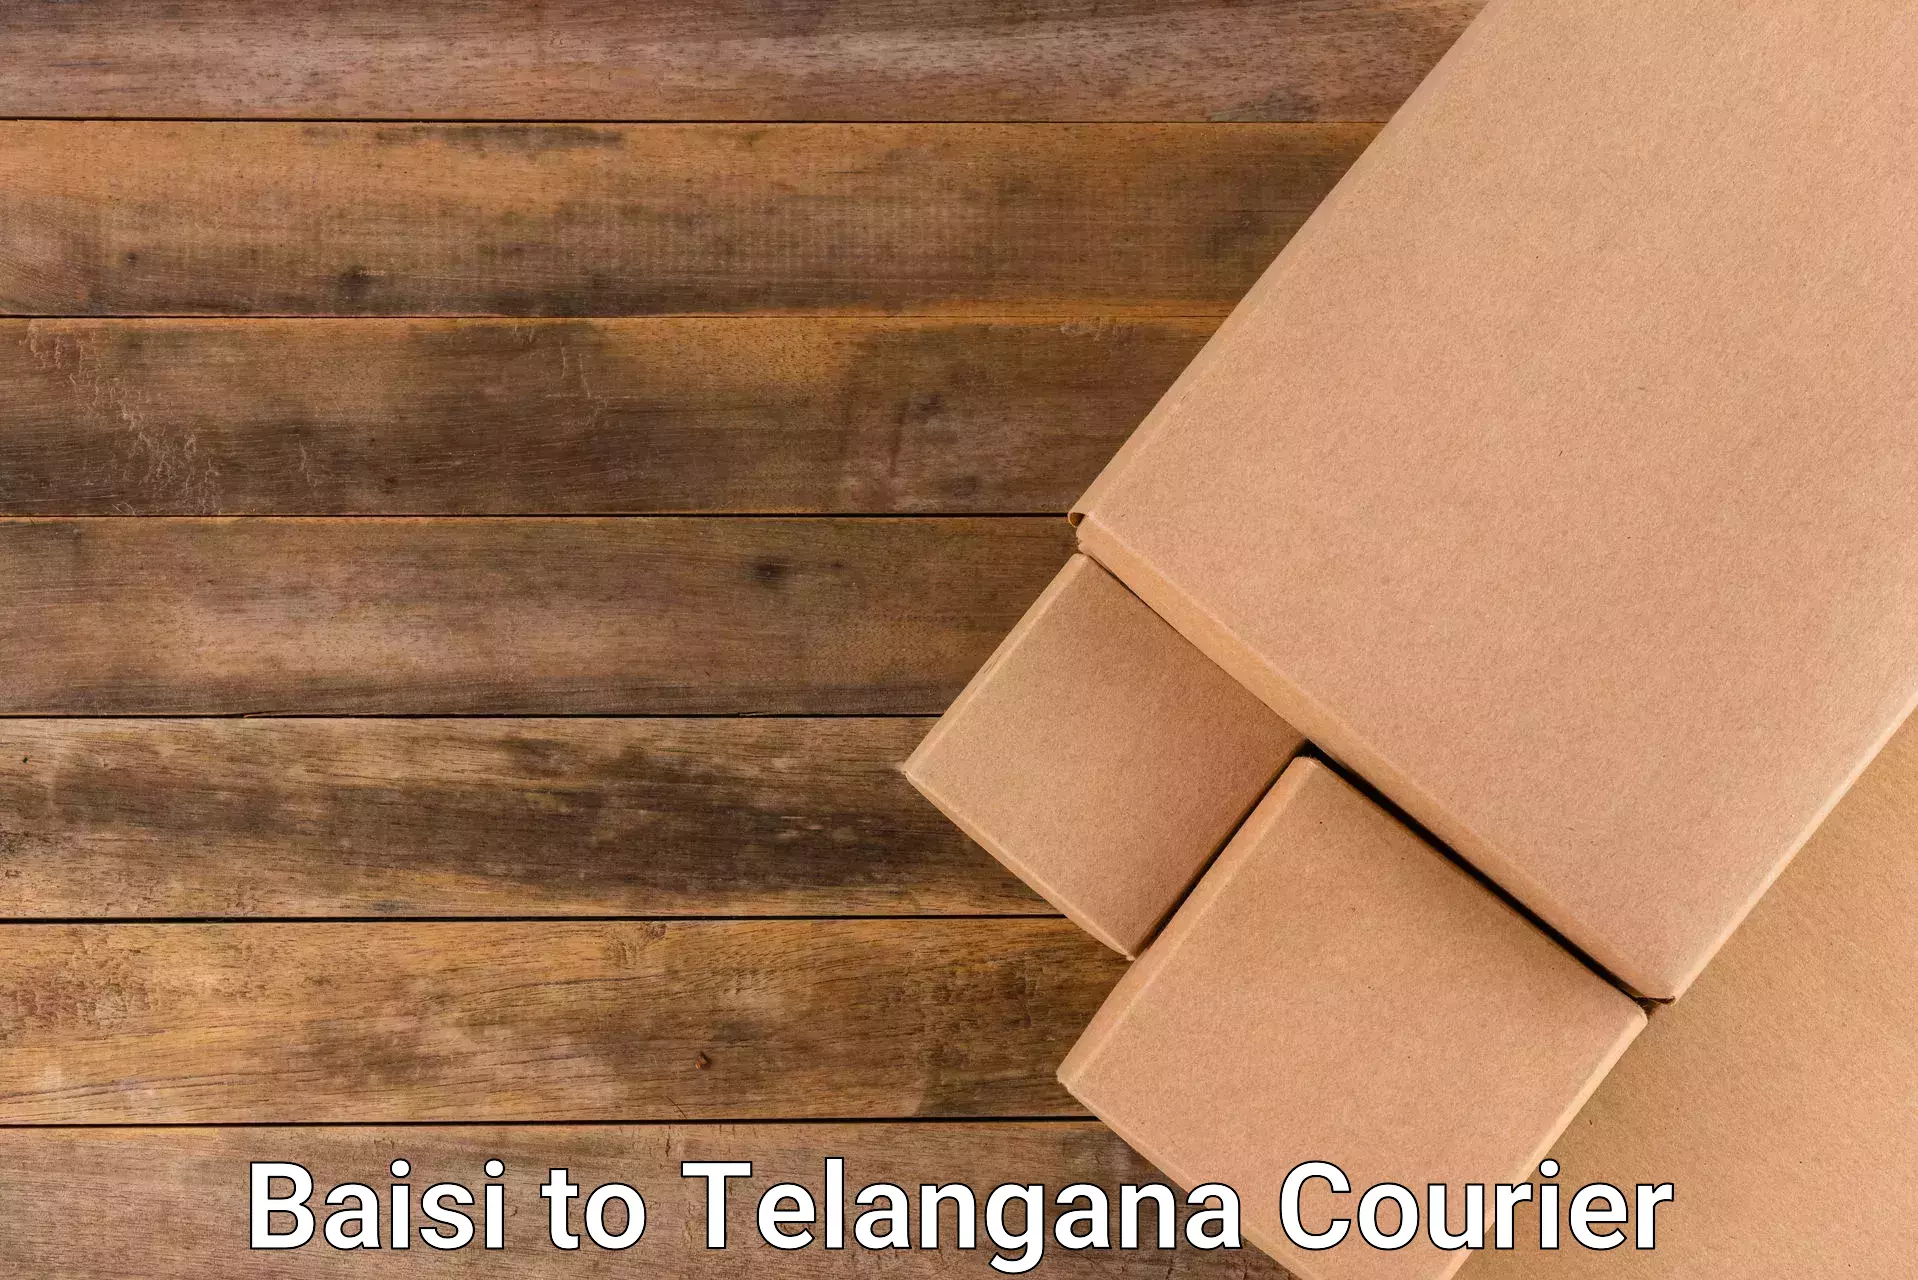 Customized shipping options Baisi to Telangana